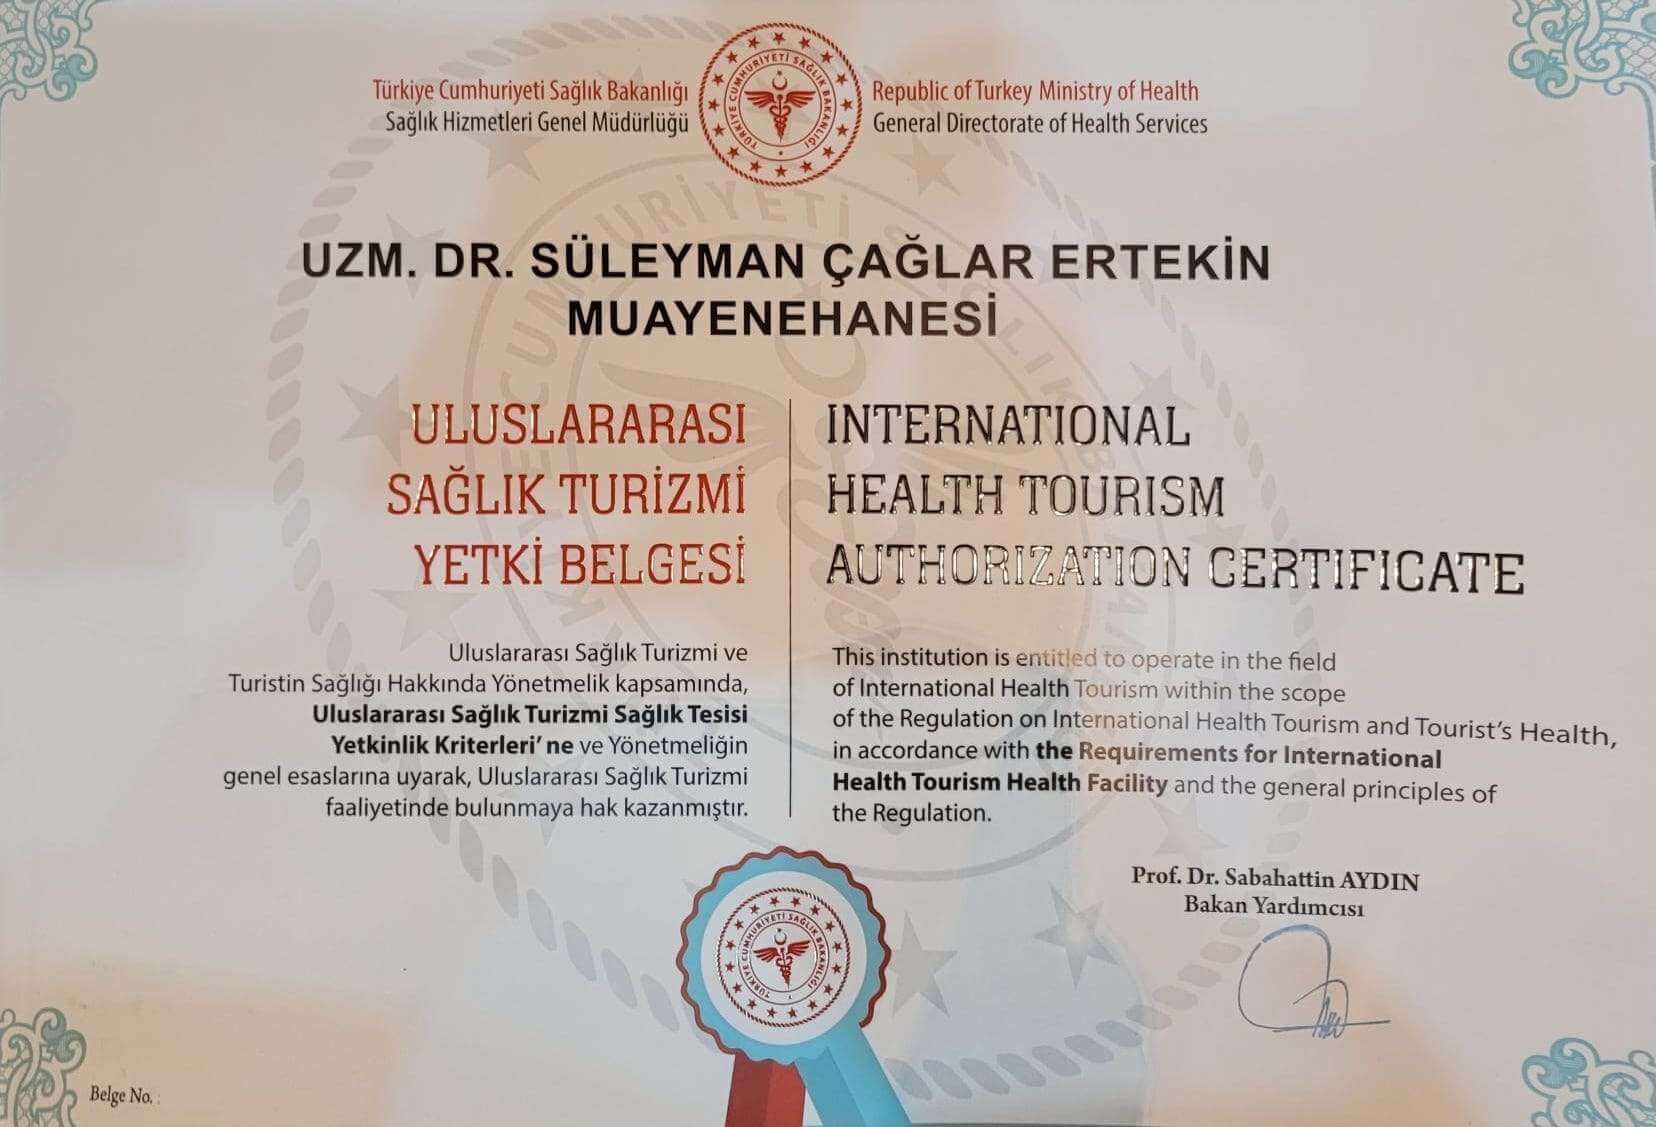 Caglar ertekin international health tourism authorization certificate